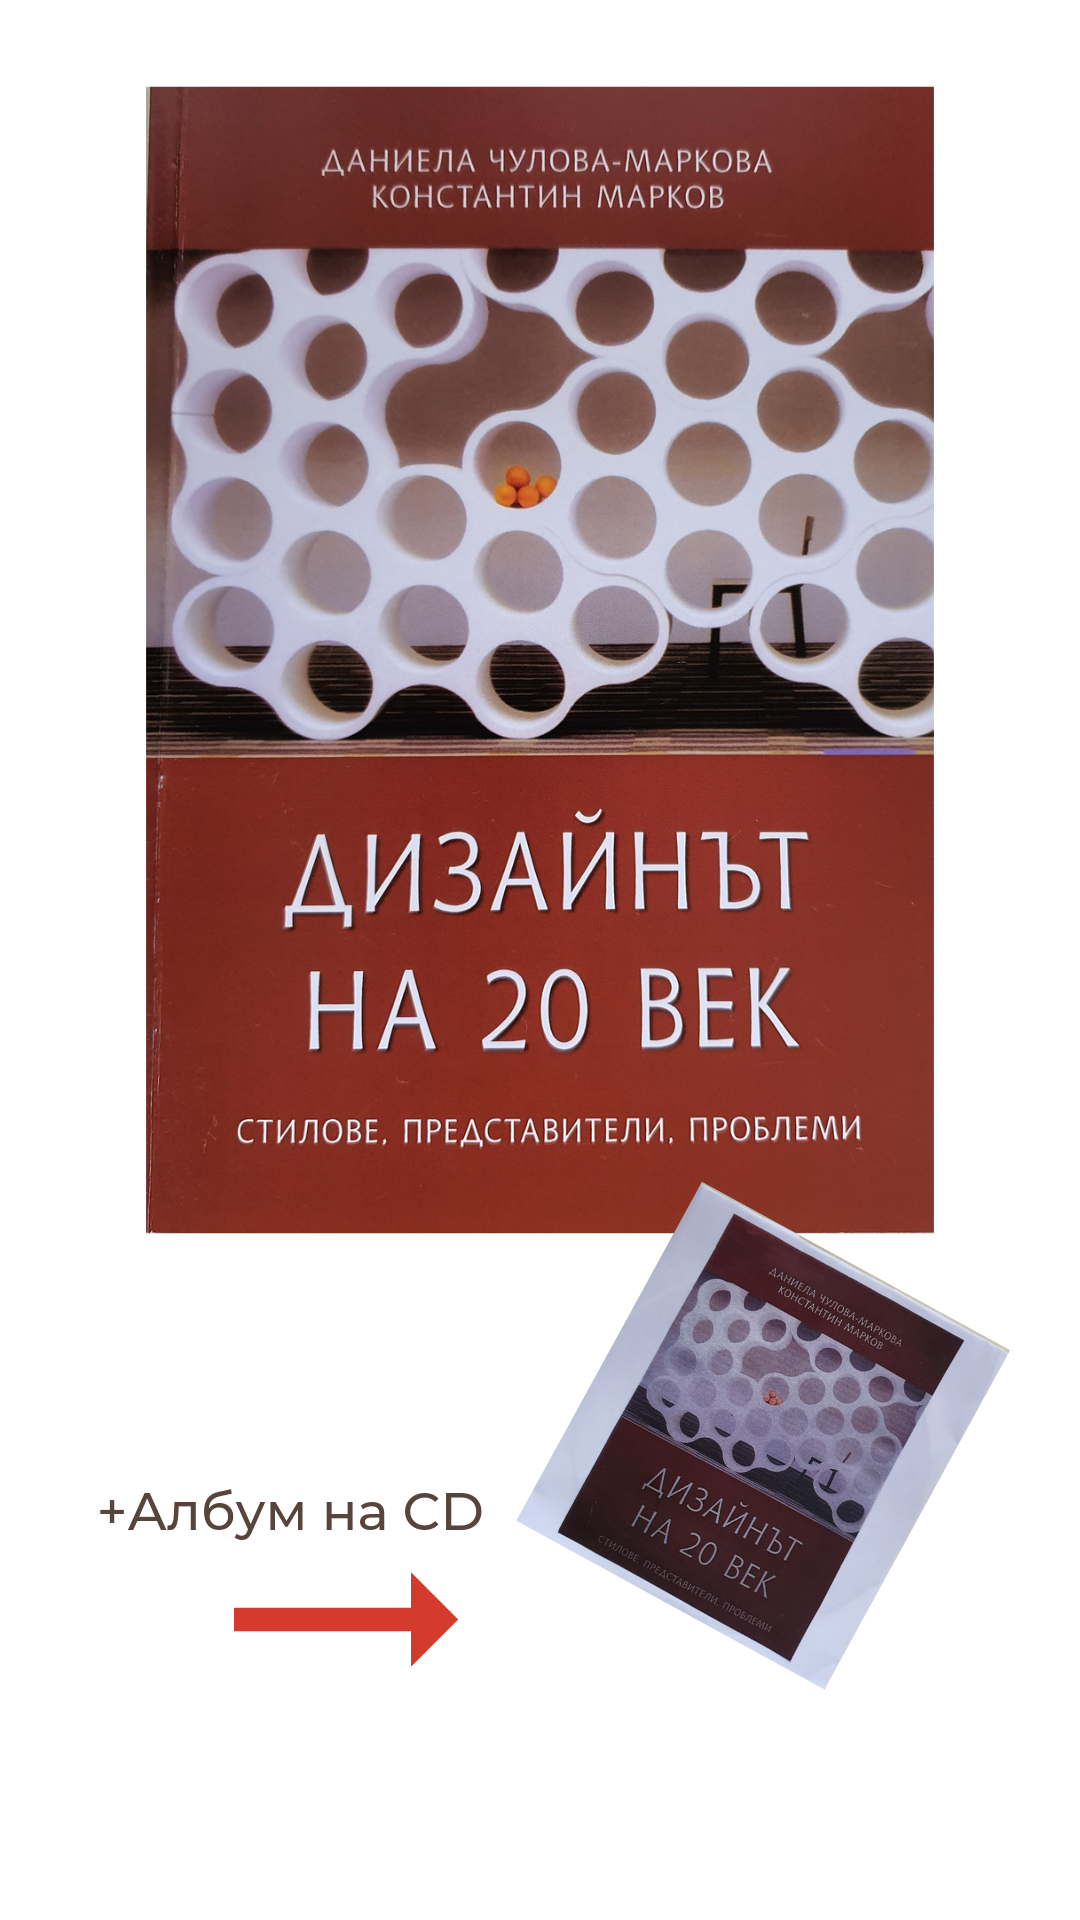 Книга по проблемите на дизайта през 20 и 21 век, придружена от албум на електронен носител.